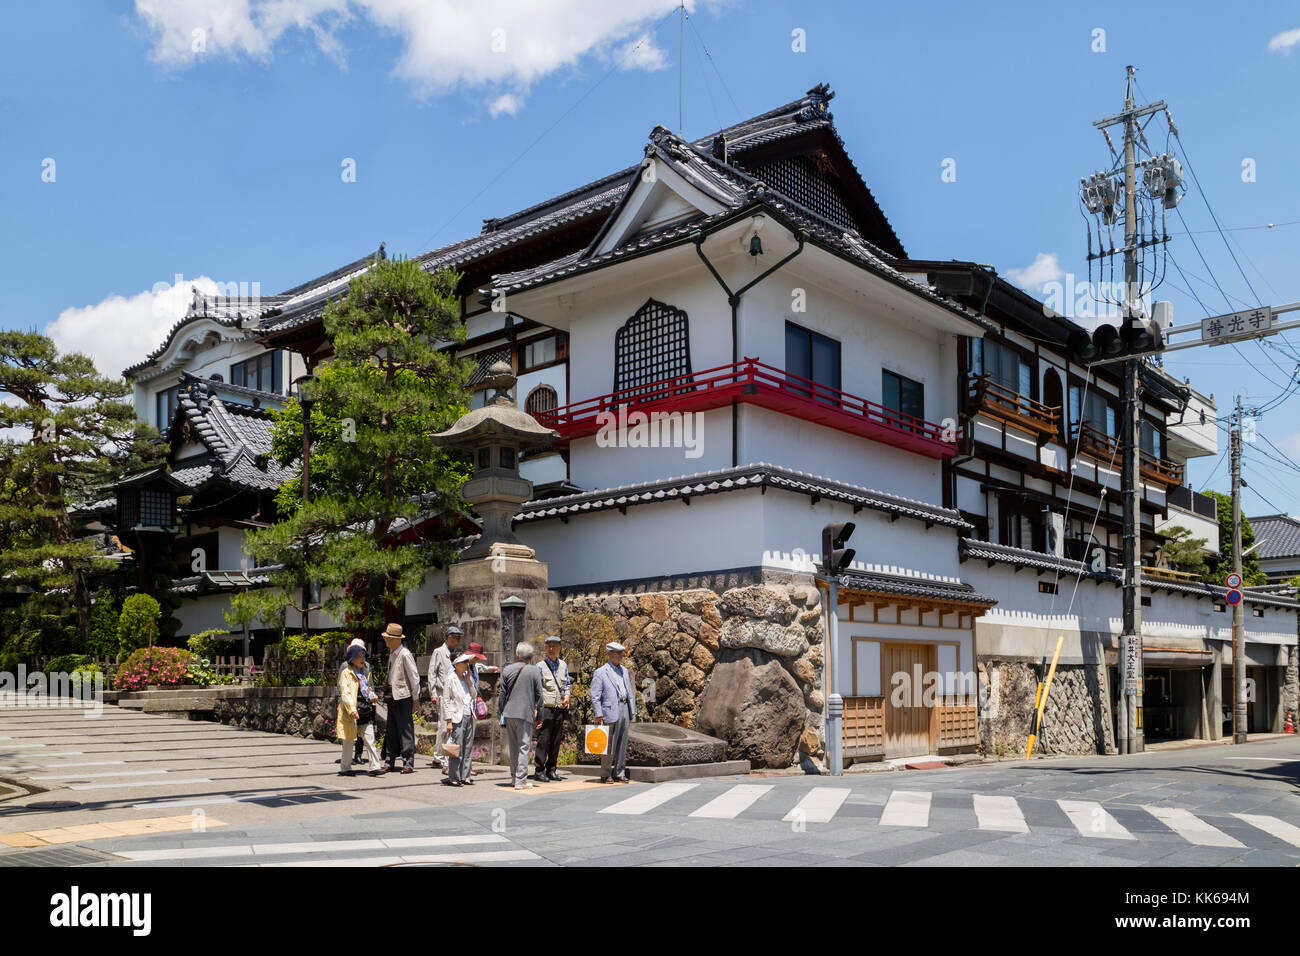 Nagano, Giappone - 5 giugno 2017: angolo di strada in nagano con case tradizionali e i turisti giapponesi Foto Stock